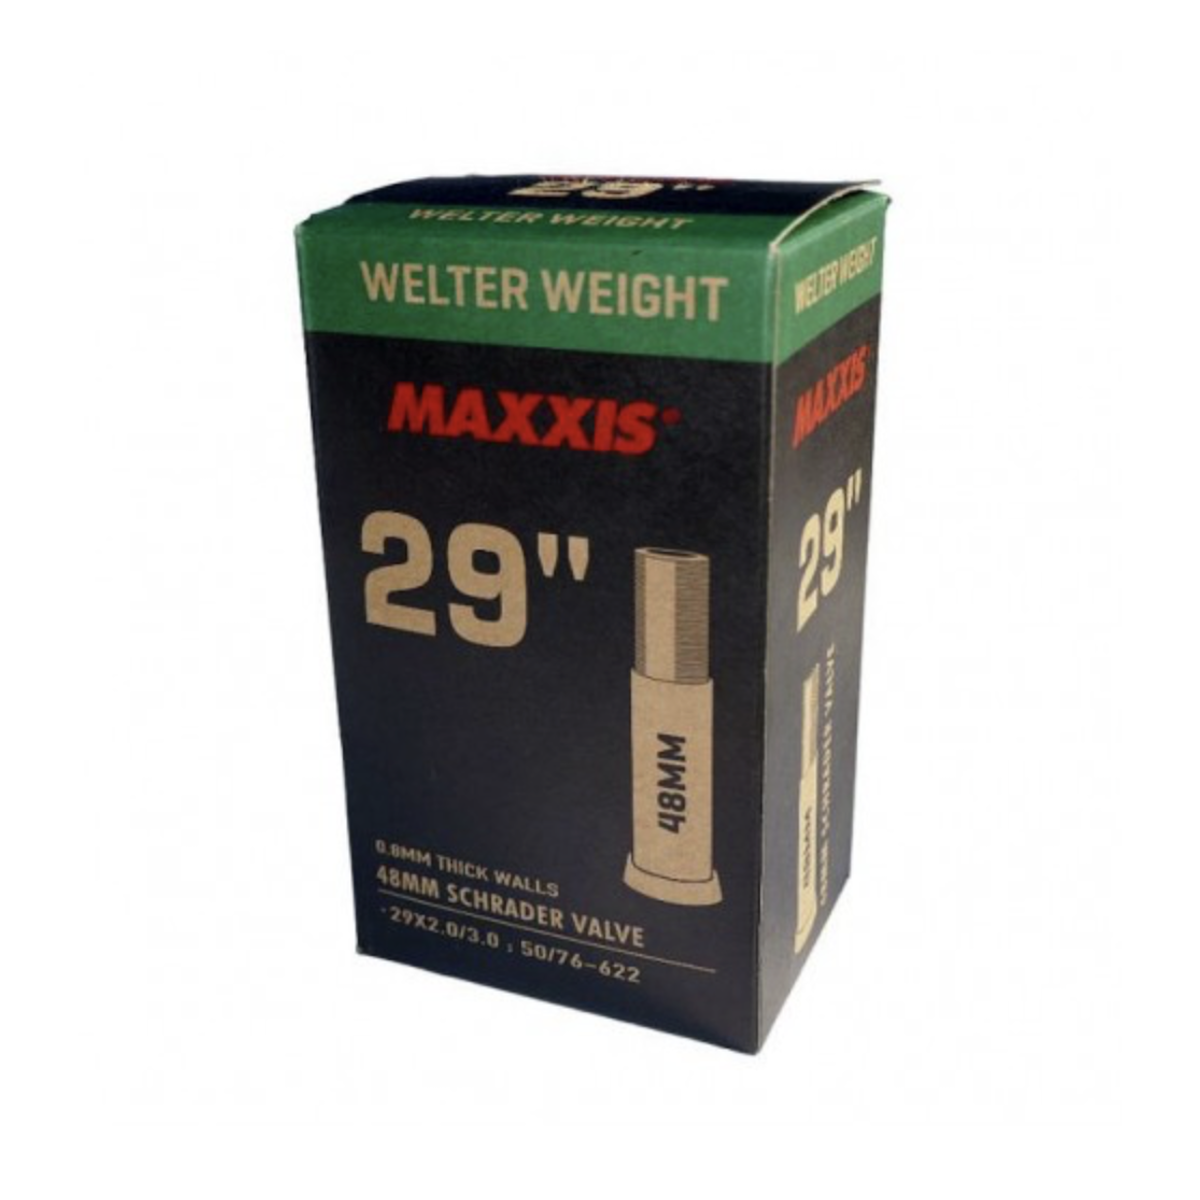 MAXXIS WELTER 29 x 2.0/3.00 SCHRADER